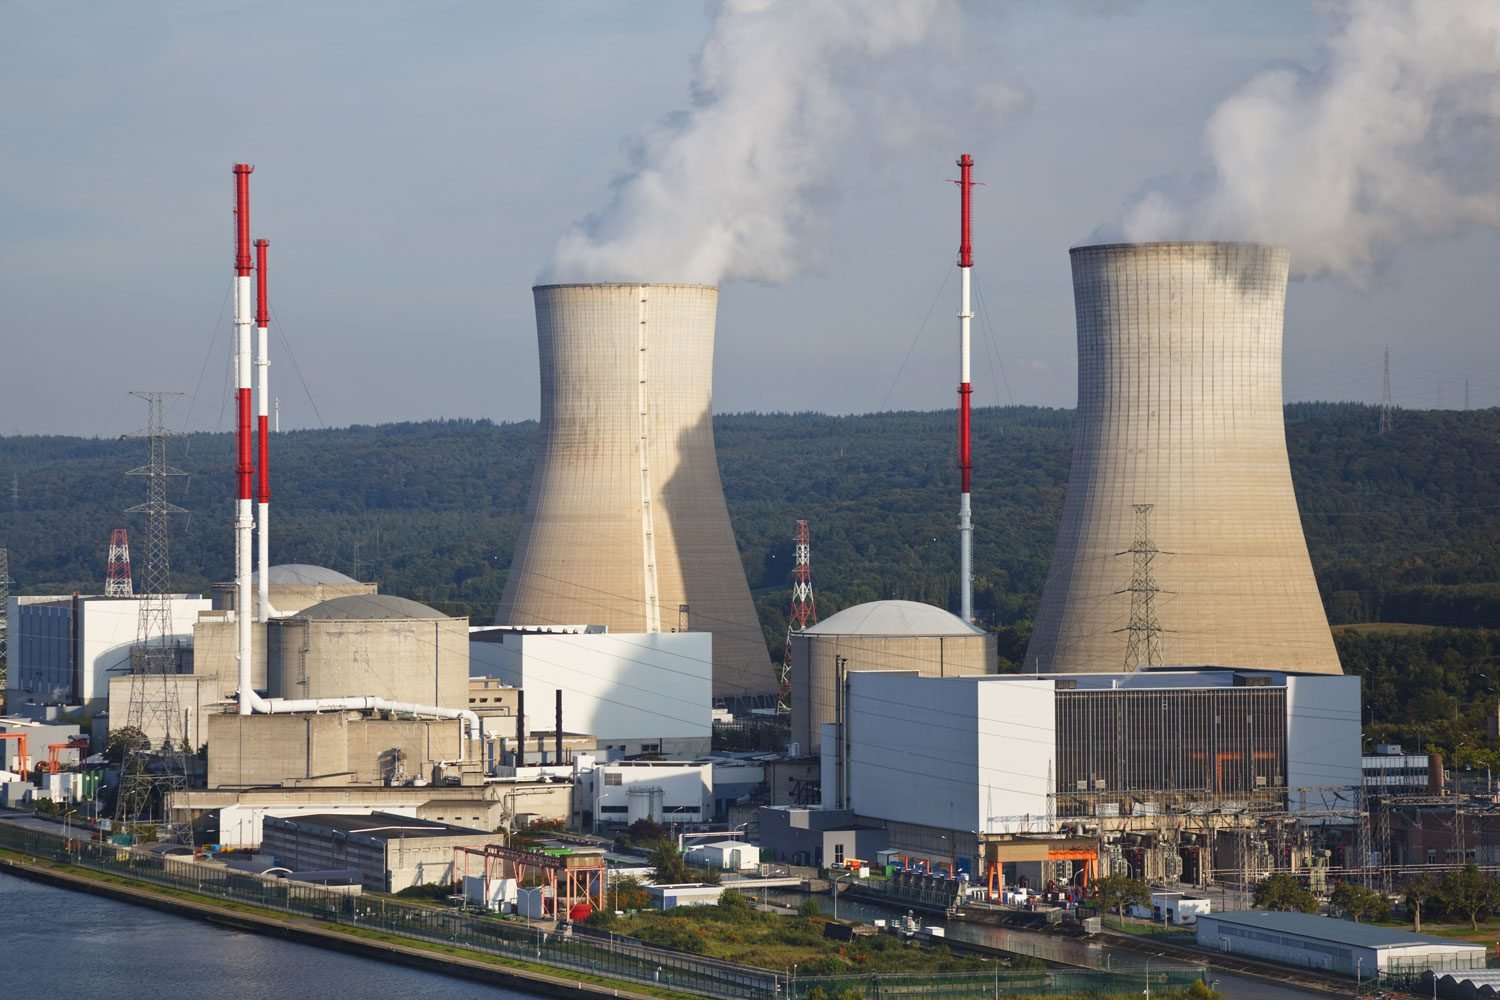 بدء تجميع مفاعل "إيتير" في فرنسا